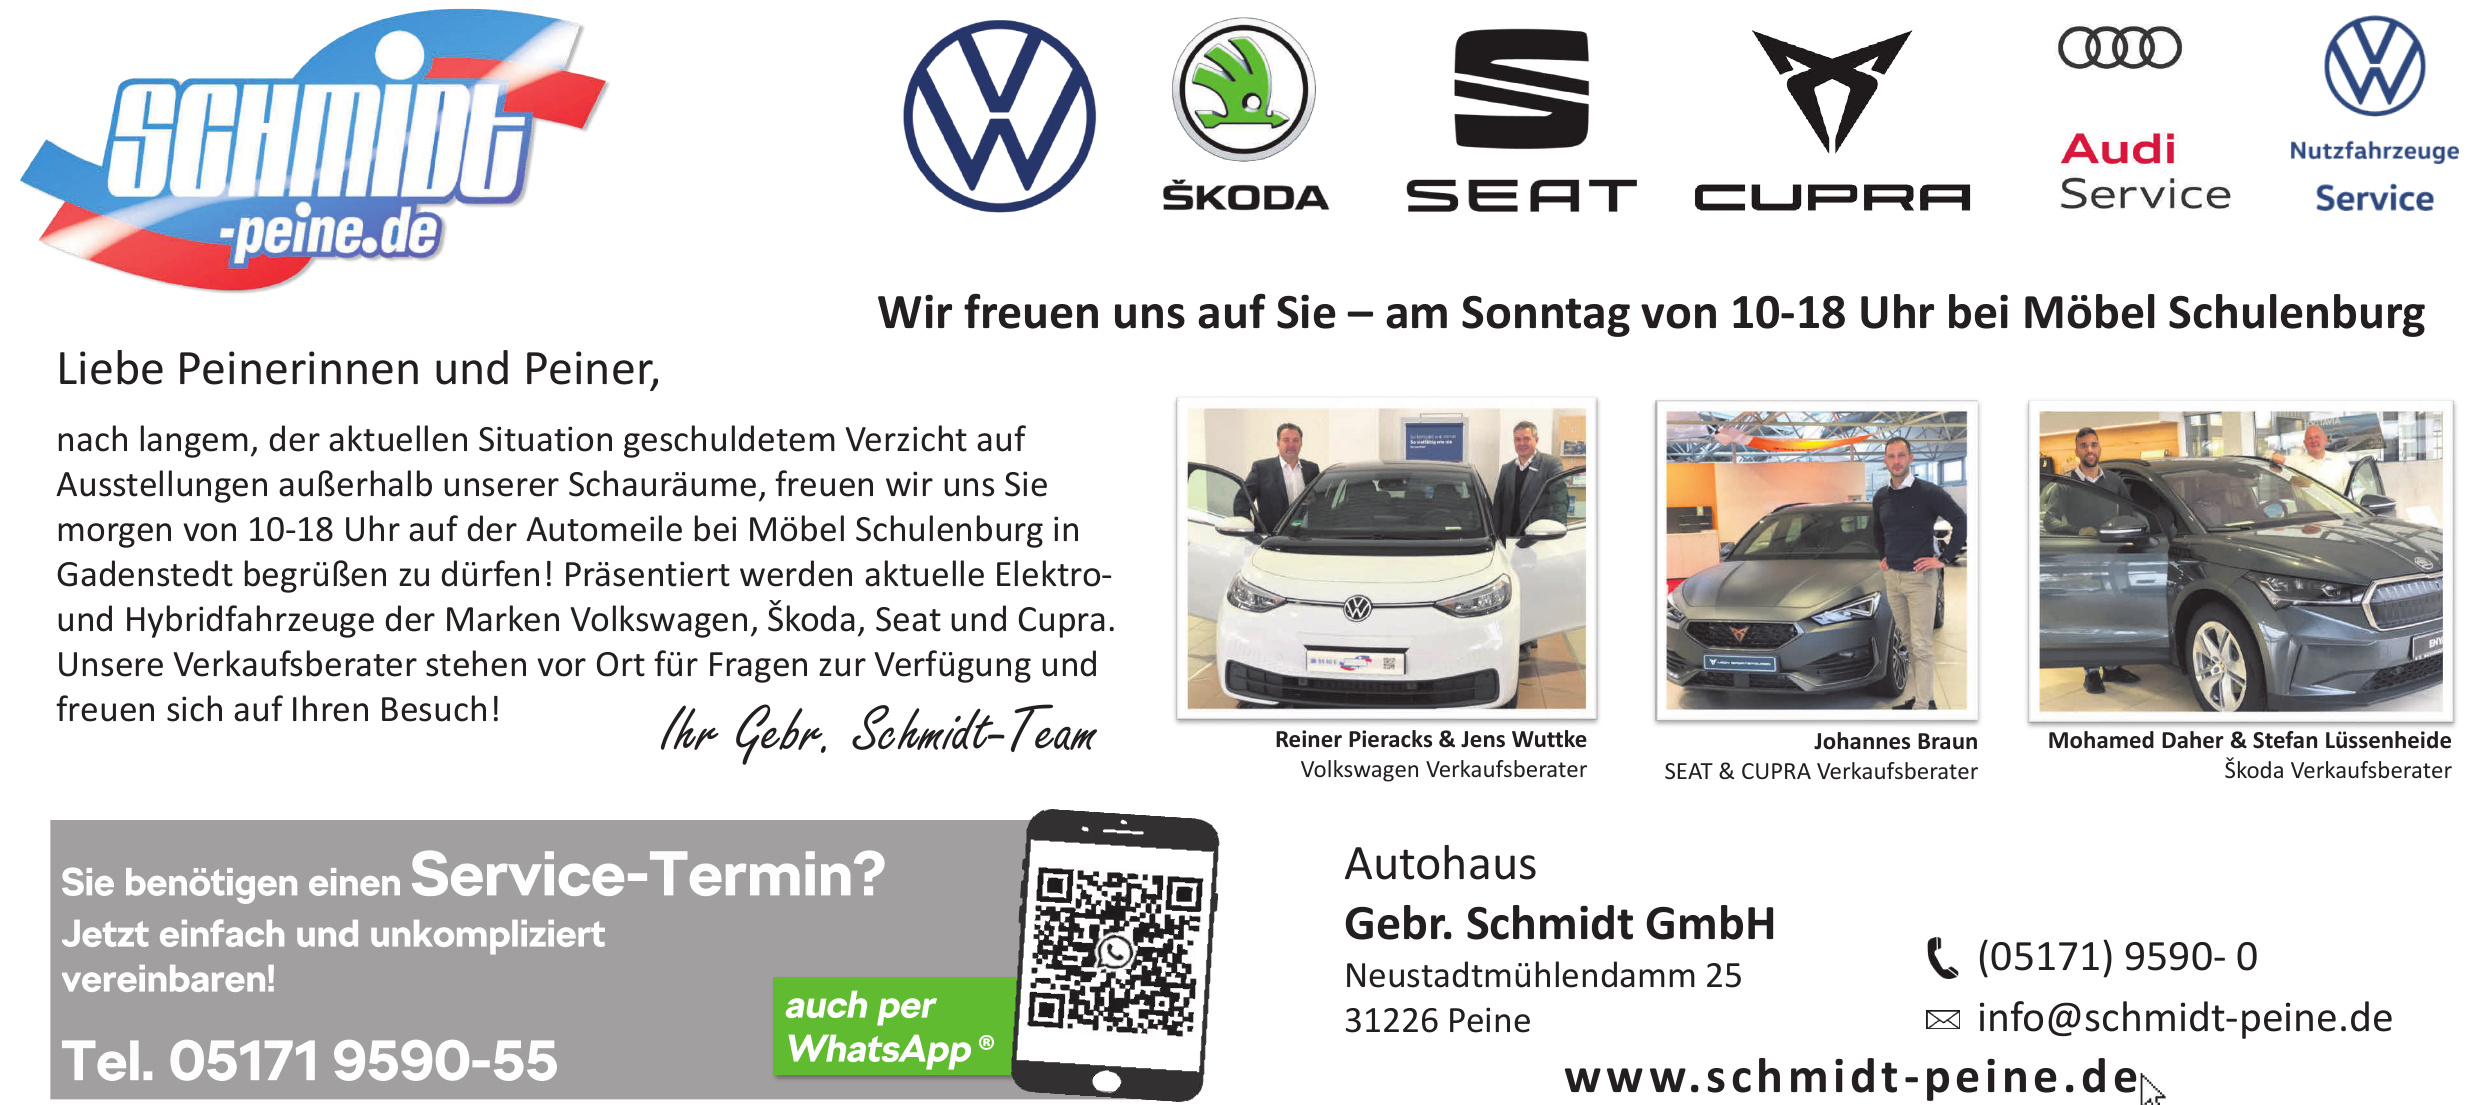 Autohaus Gebr. Schmidt GmbH